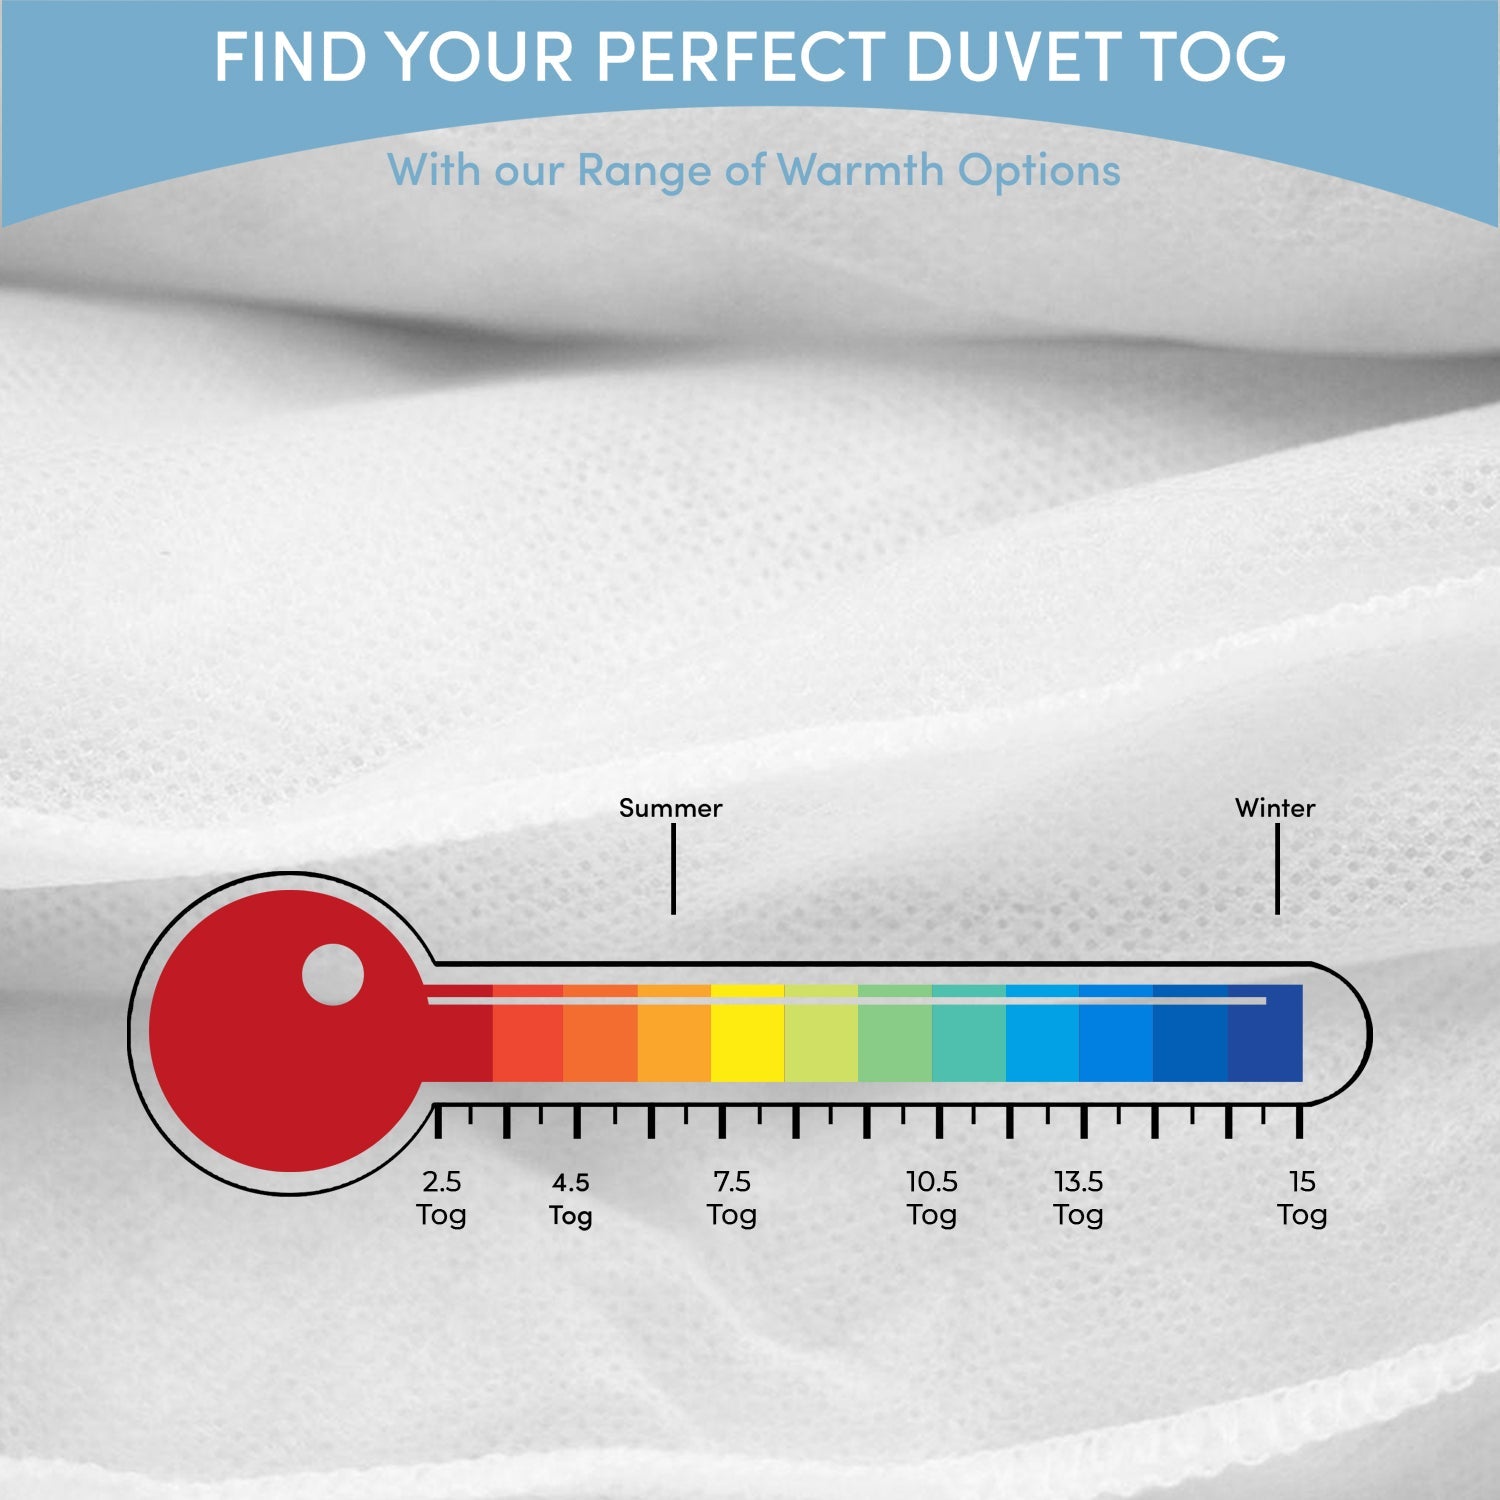 Winter Duvet Tog | Warm & Highest Tog Rating